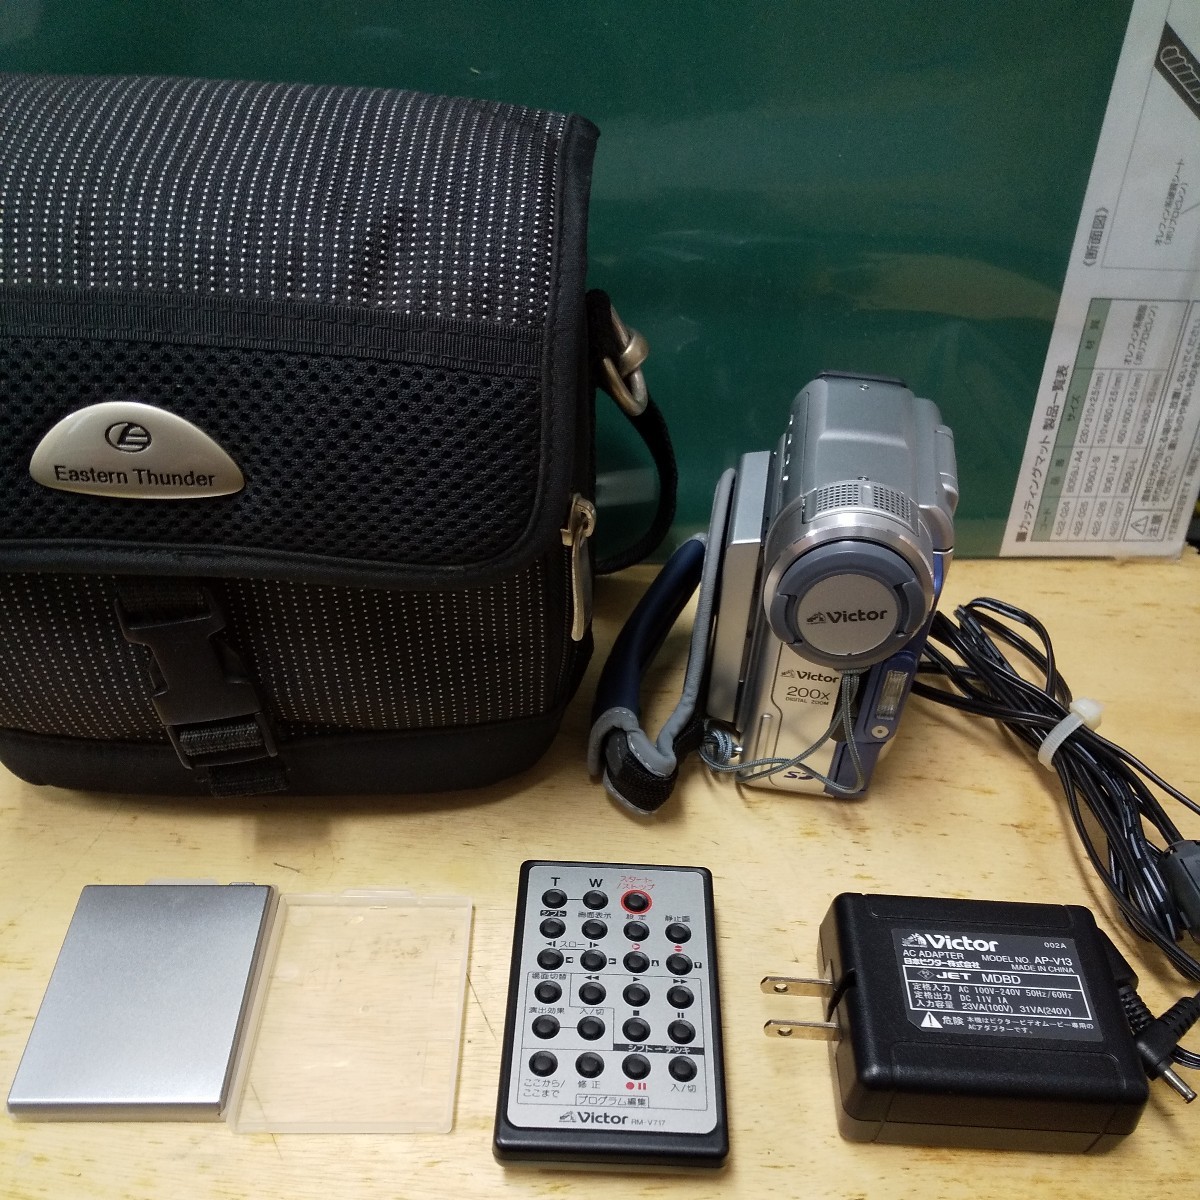 Victor mega pixel gr-dx115 портфель аккумулятор адаптор дистанционный пульт электризация проверка стоимость доставки 520 видео камера кассетная лента sd карта фотоснимок 